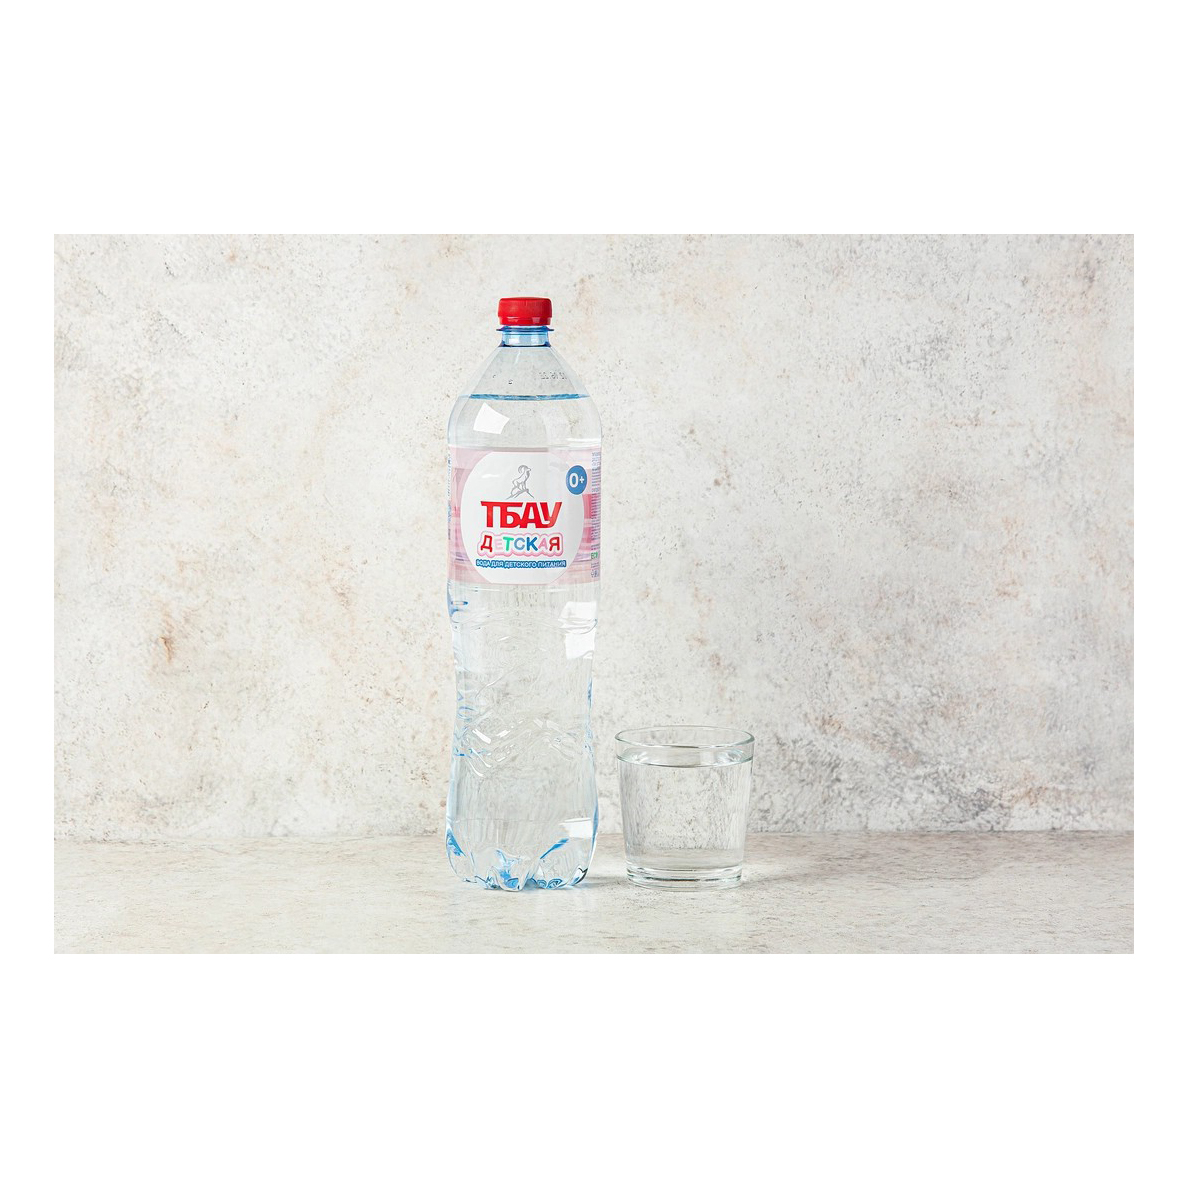 Вода питьевая детская Тбау негазированная с рождения 1,5 л